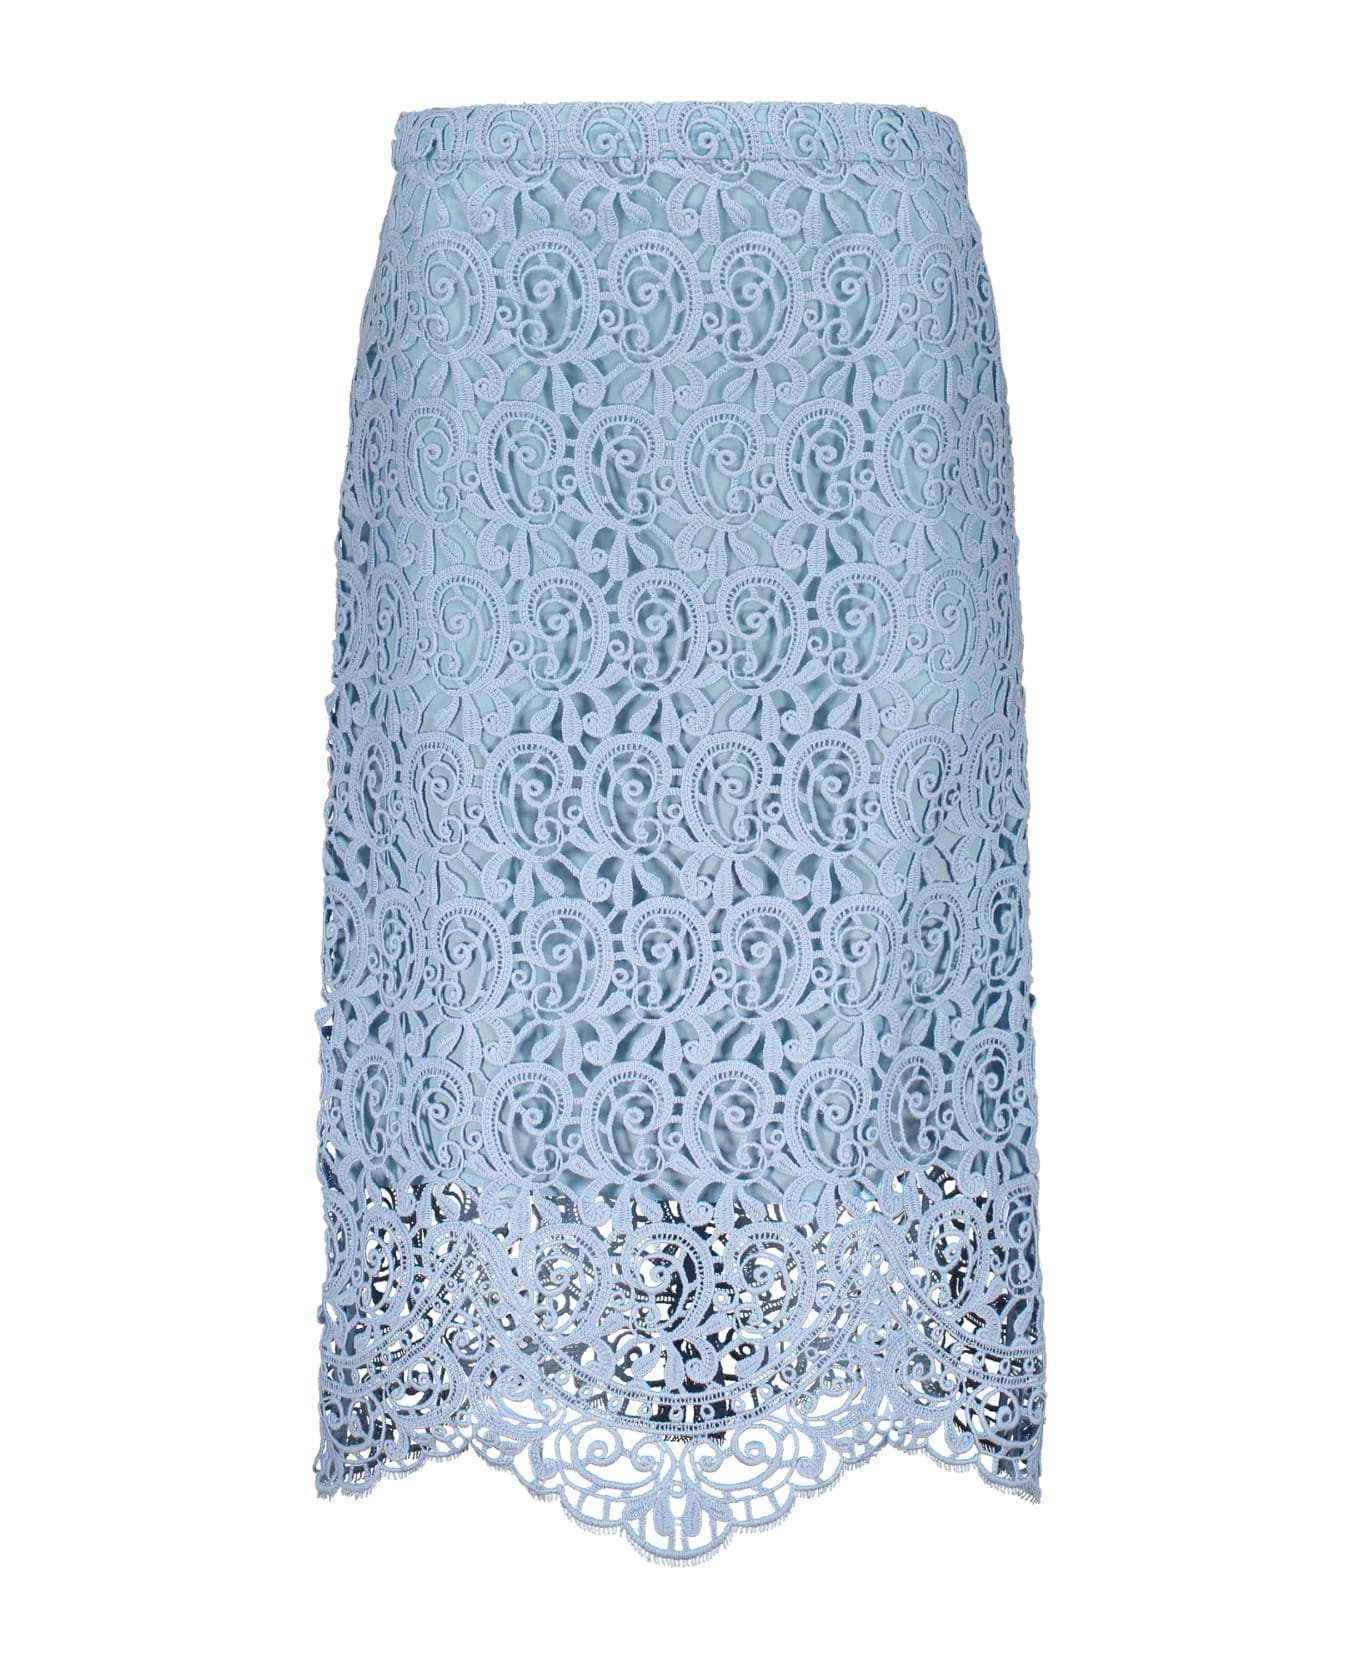 Burberry Lace Skirt - Light Blue スカート